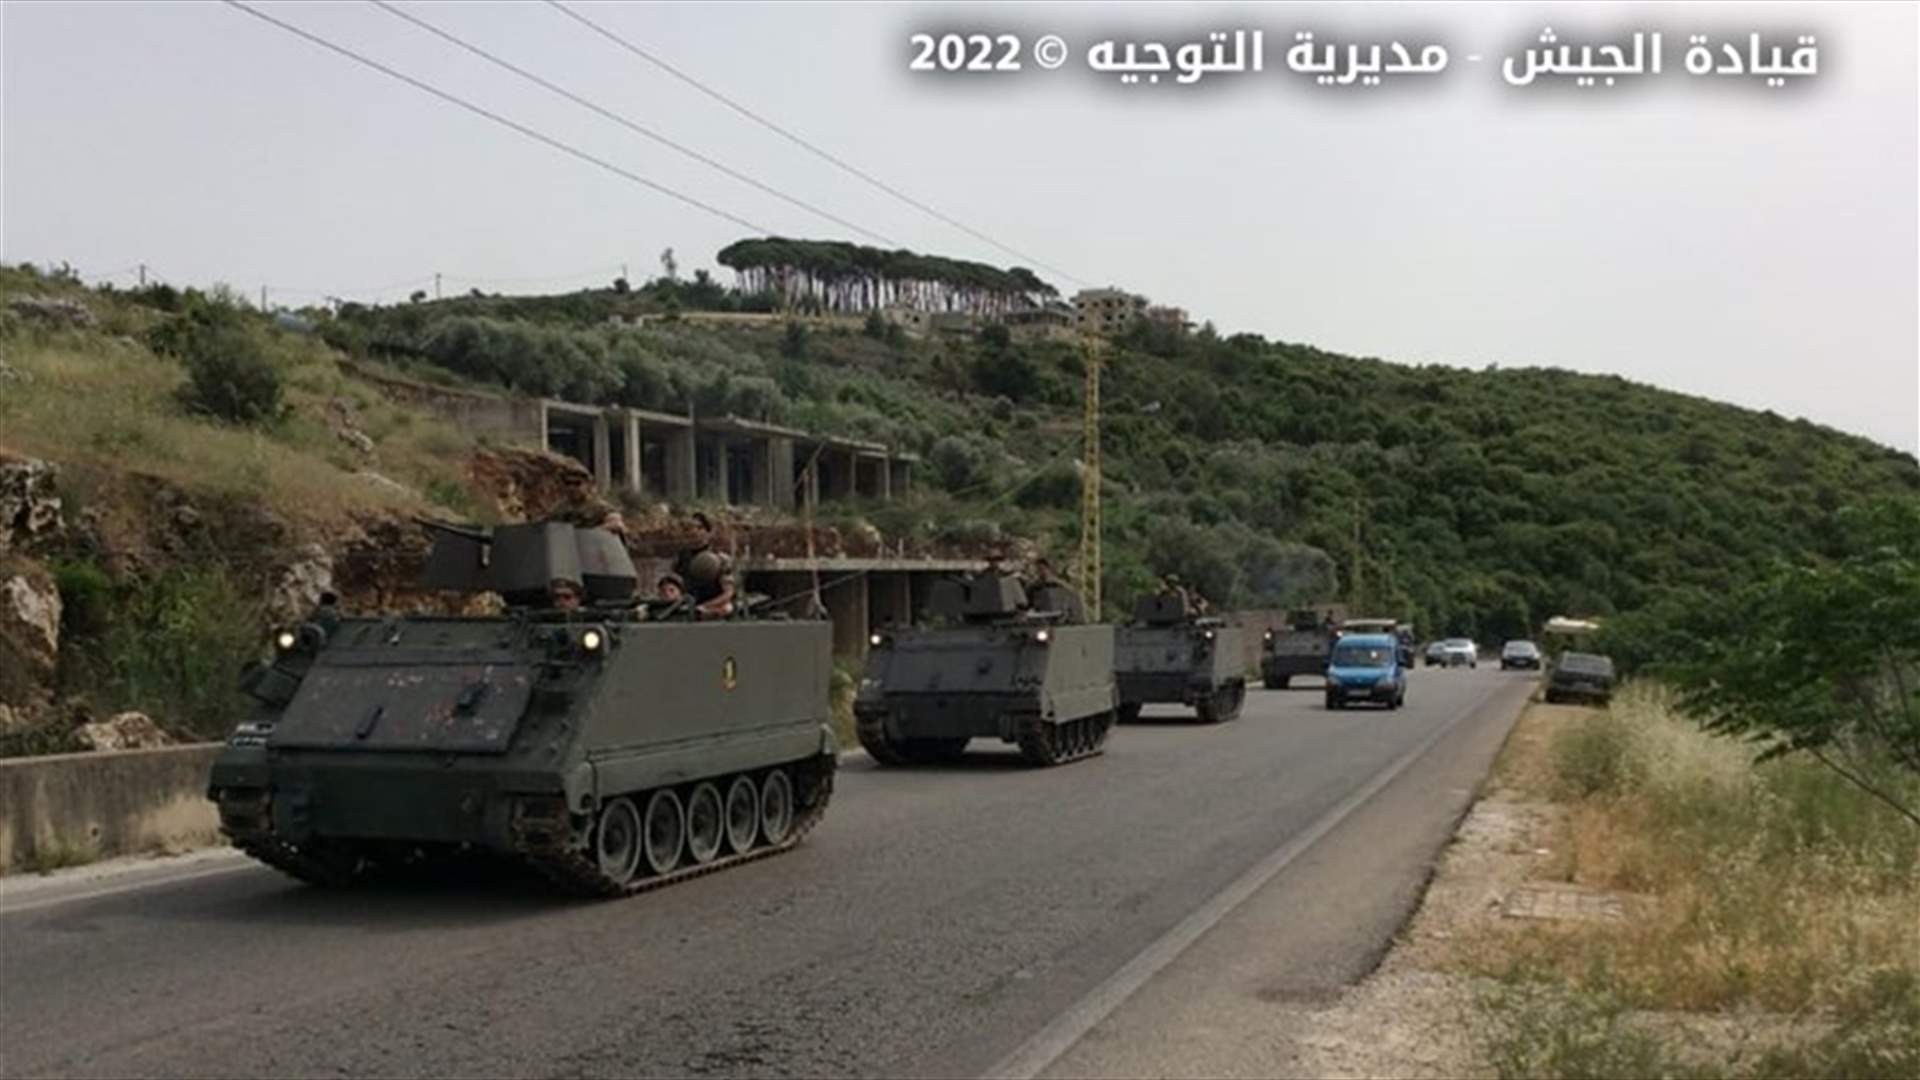 الجيش: حصيلة التدابير الأمنية خلال شهر تشرين الثاني المنصرم